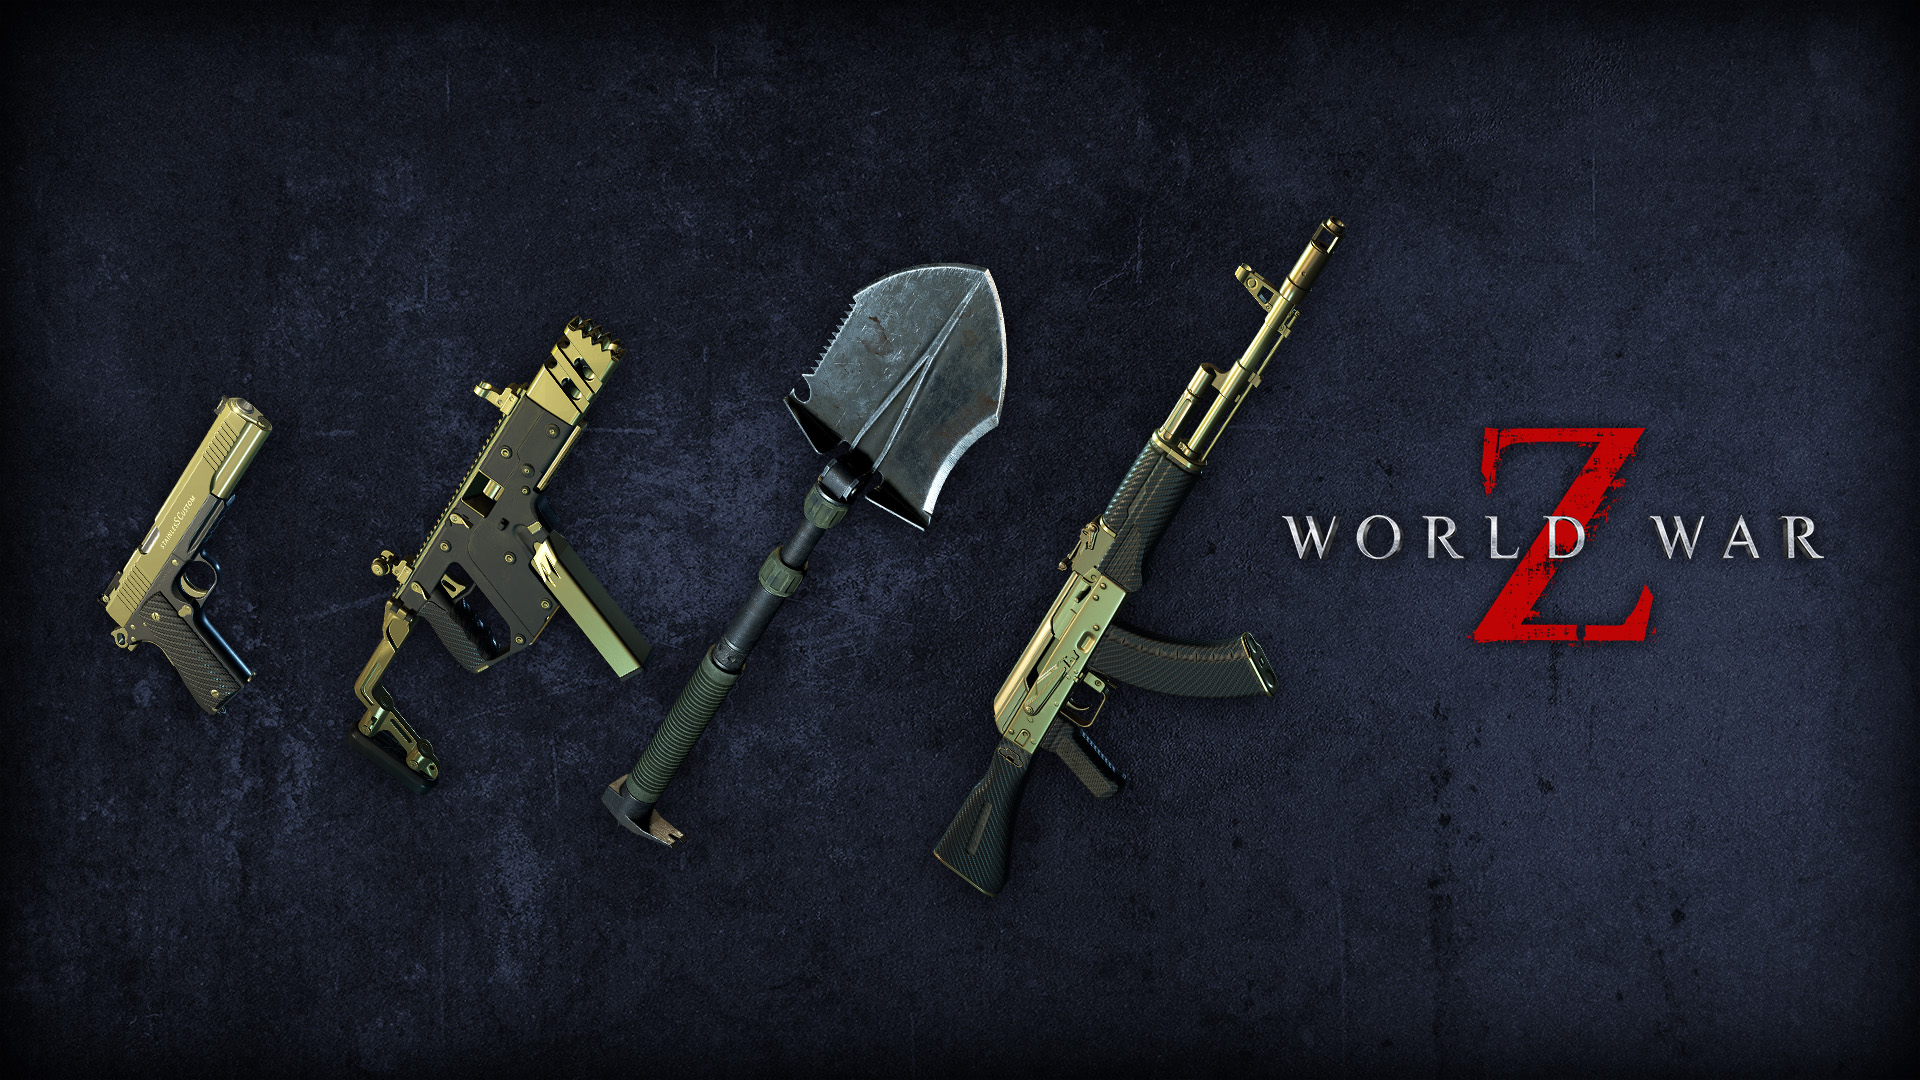 World War Z - Lobo Weapon Pack